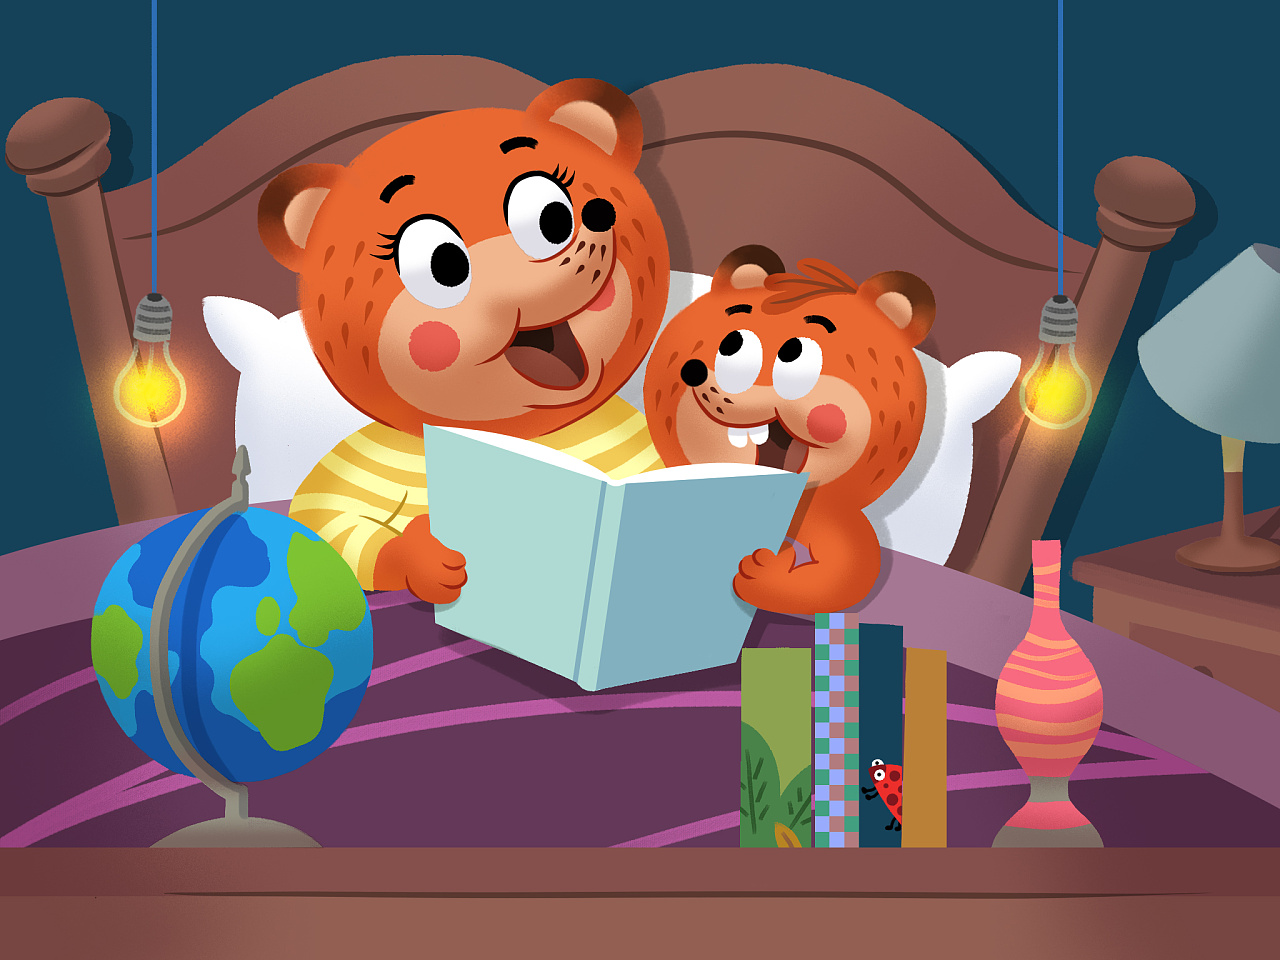 熊孩子绘本故事 第13集 - 视频在线观看 - 熊孩子绘本故事 - 芒果TV